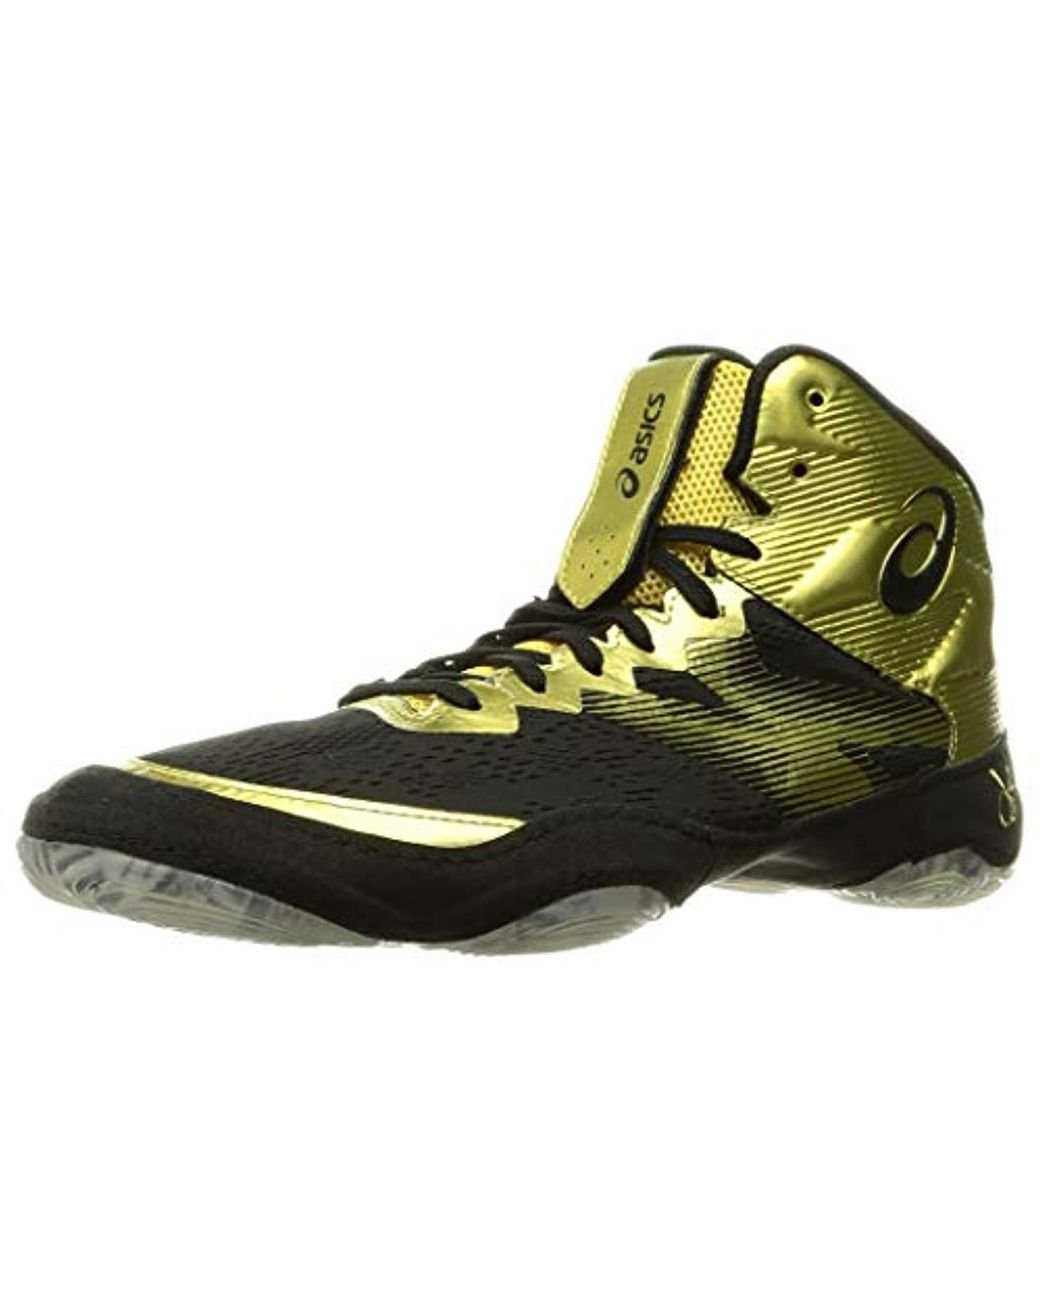 Asics Jb Elite Iv 1081a0 Wrestling Shoes Boxing Shoes Mma (6.5 Uk, Rich  Gold/black) for Men | Lyst UK